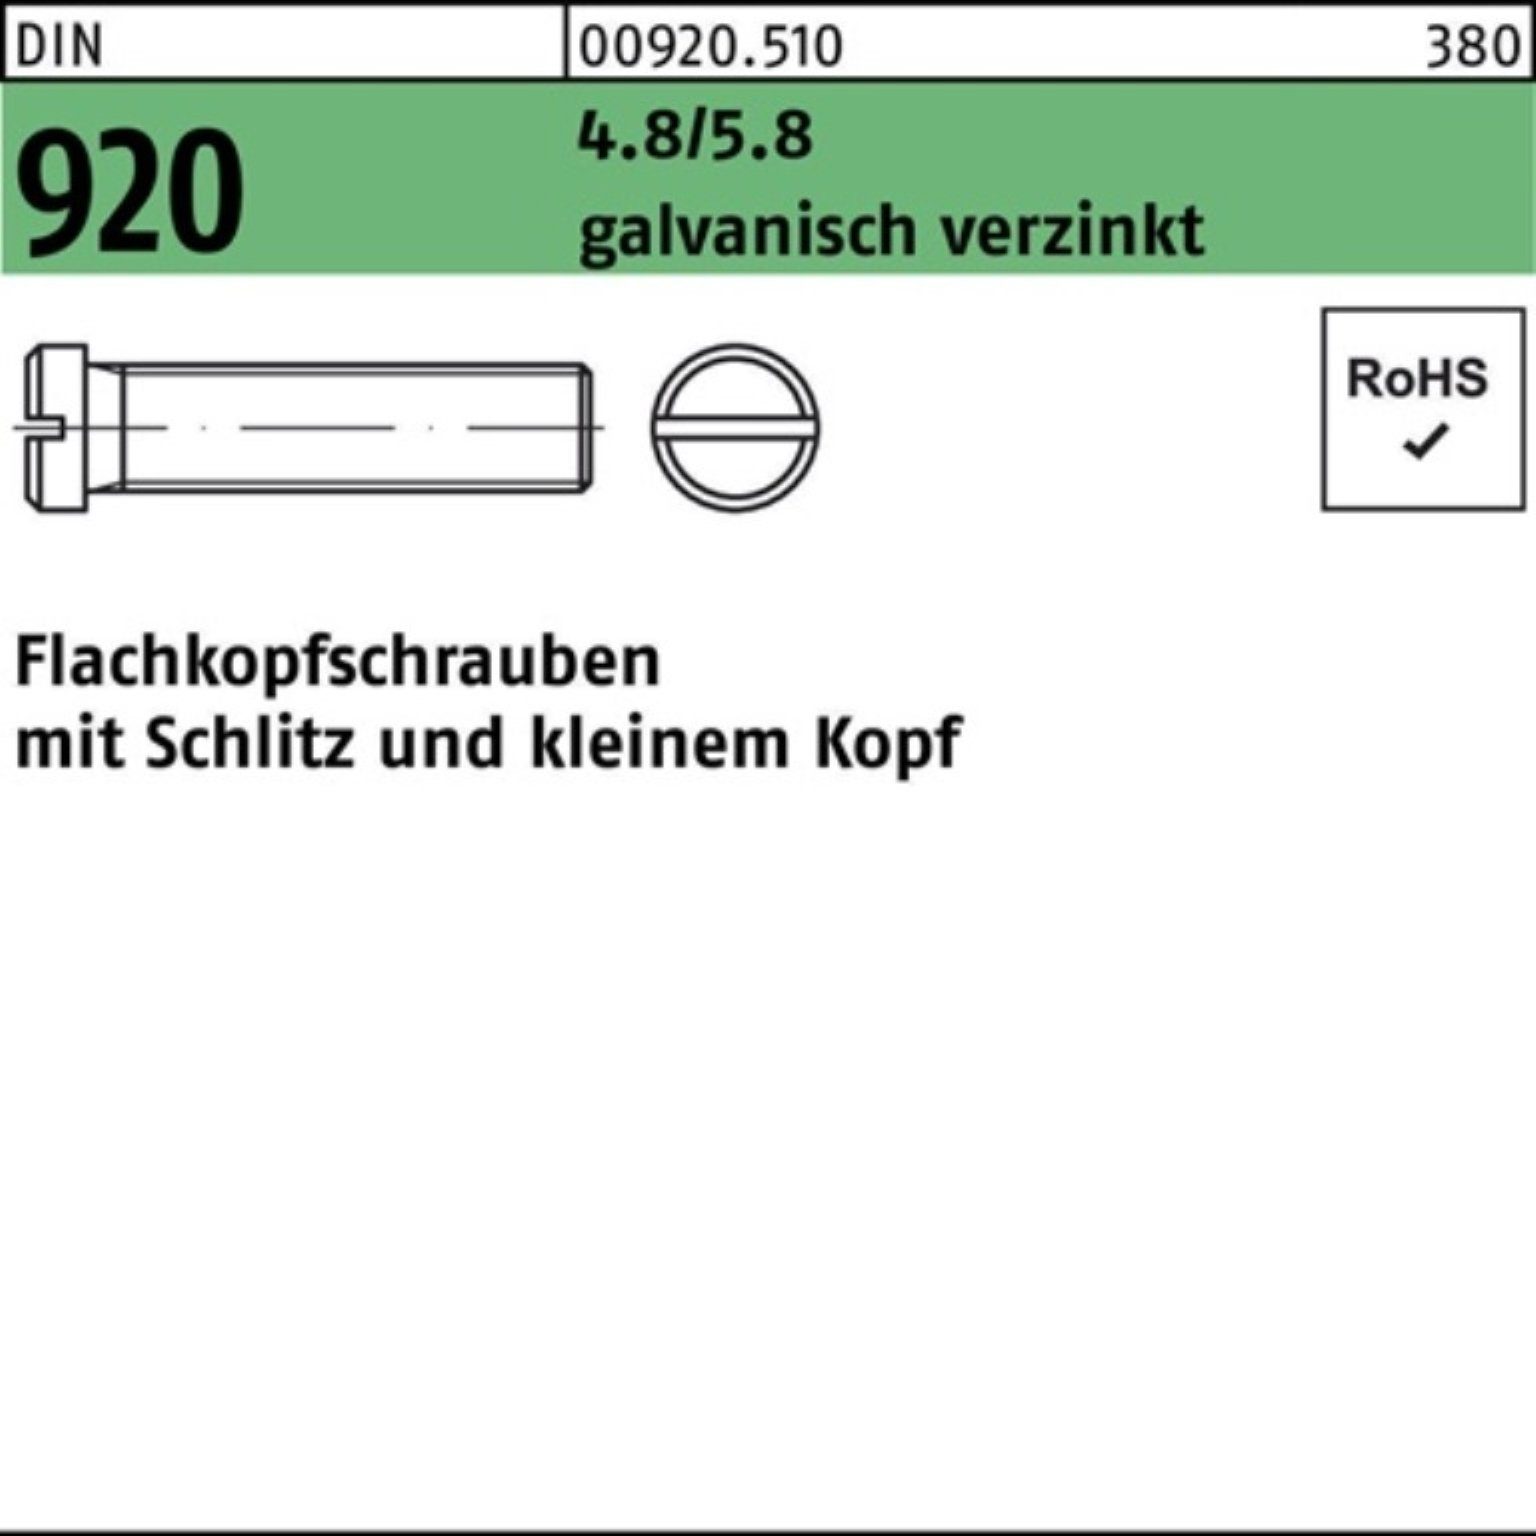 Reyher Schraube 100er Pack Flachkopfschraube DIN 920 Schlitz M3x 3 4.8/5.8 galv.verz.